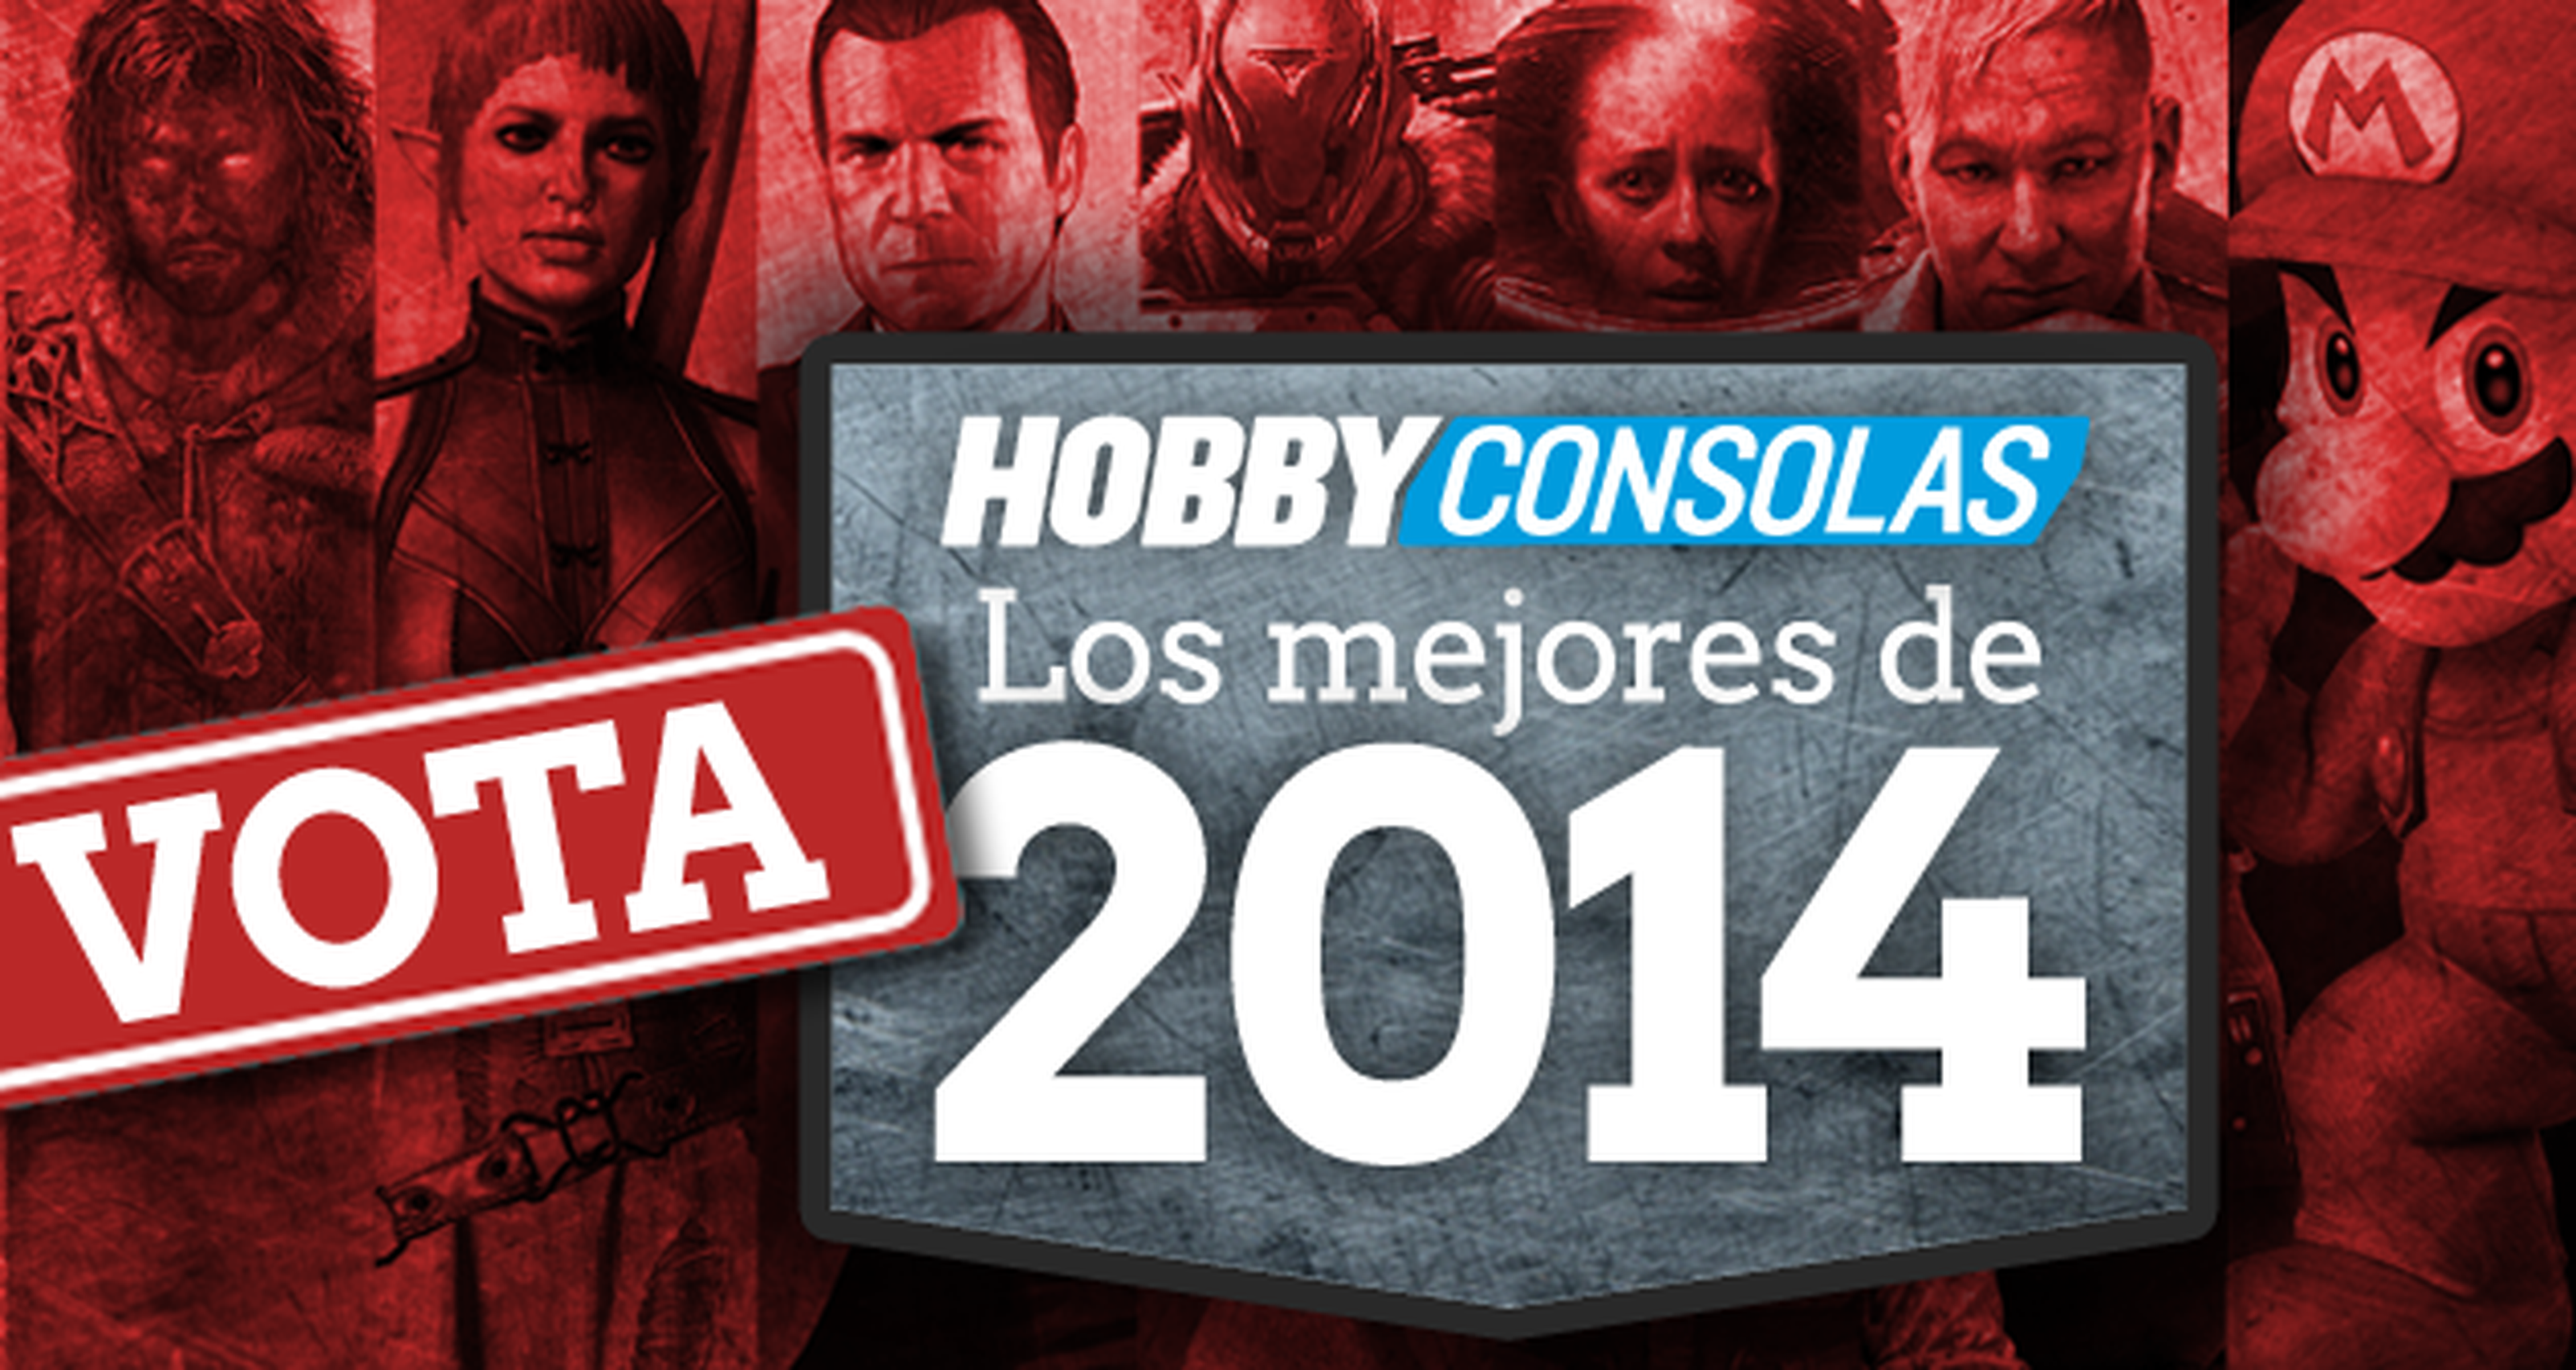 Los mejores de 2014, ¡Vota y gana juegos y consolas!